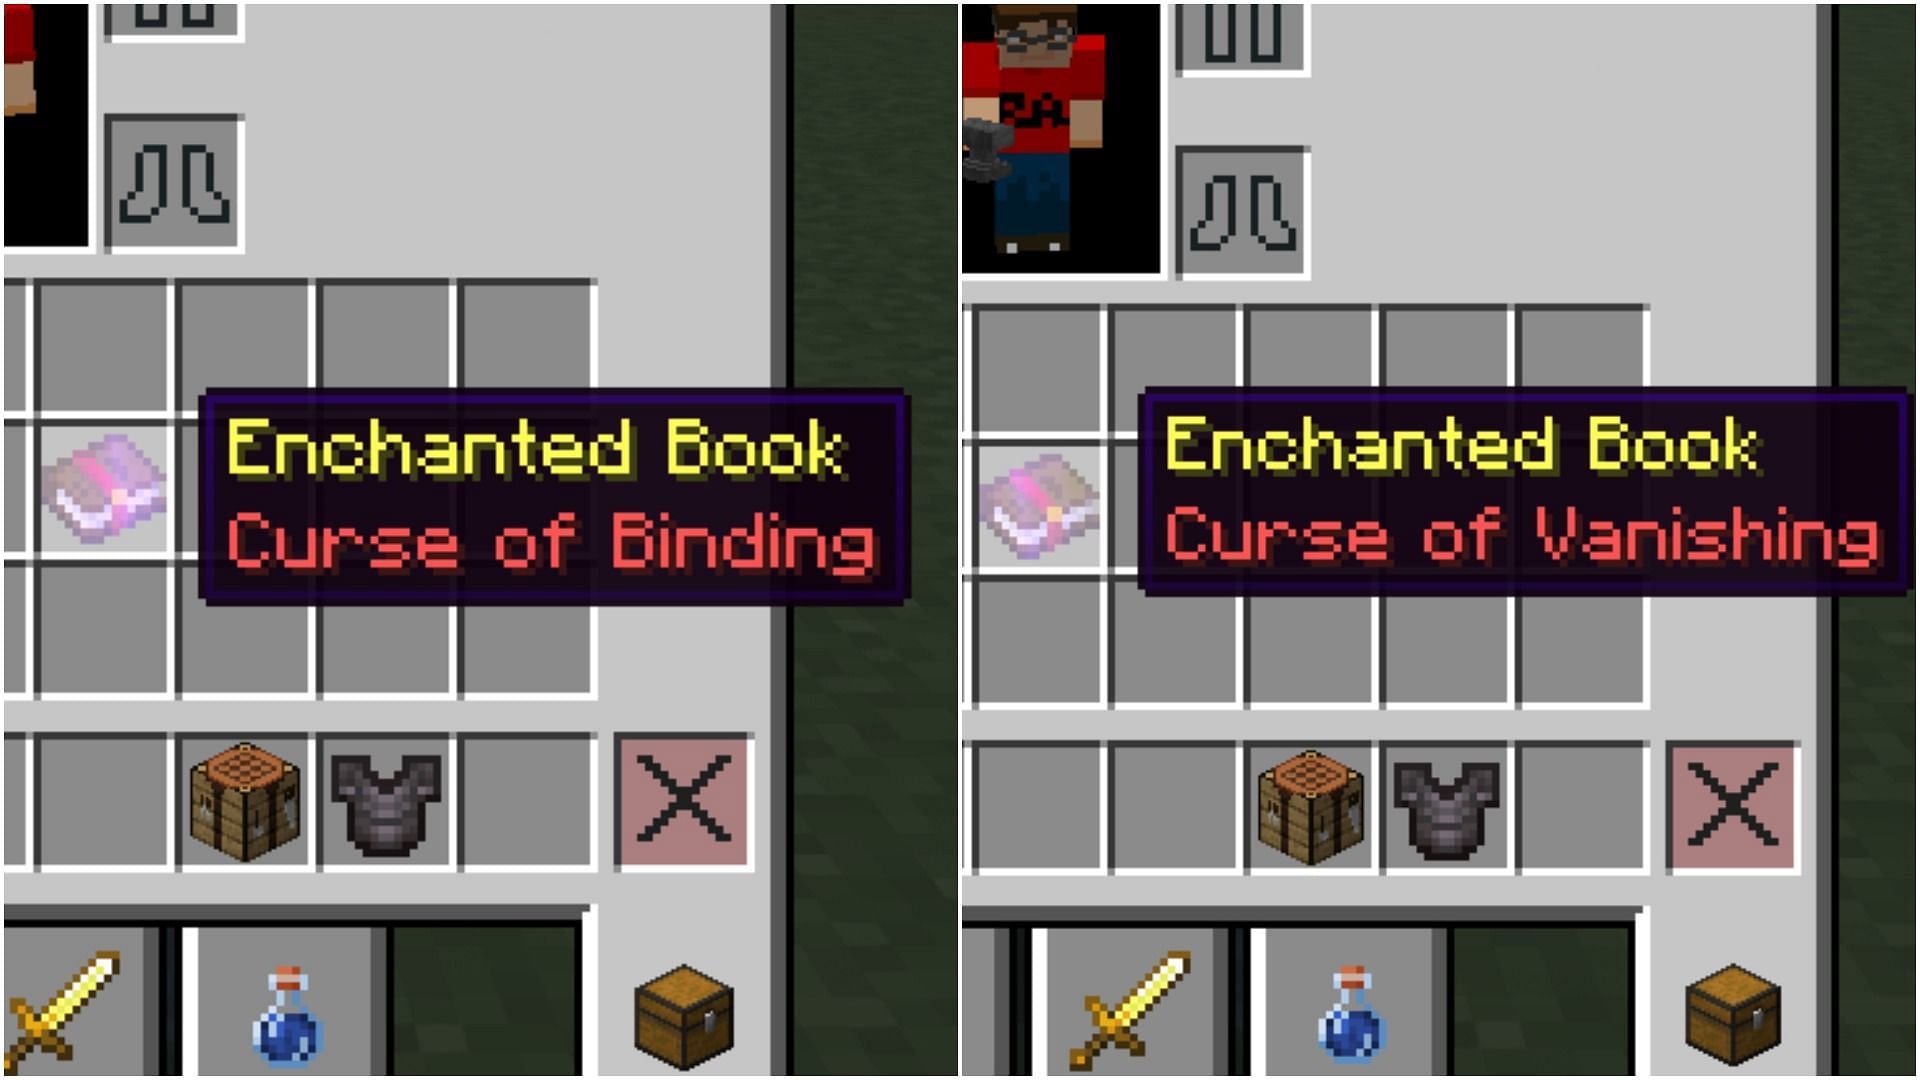 Curse enchantments (Image via Minecraft)